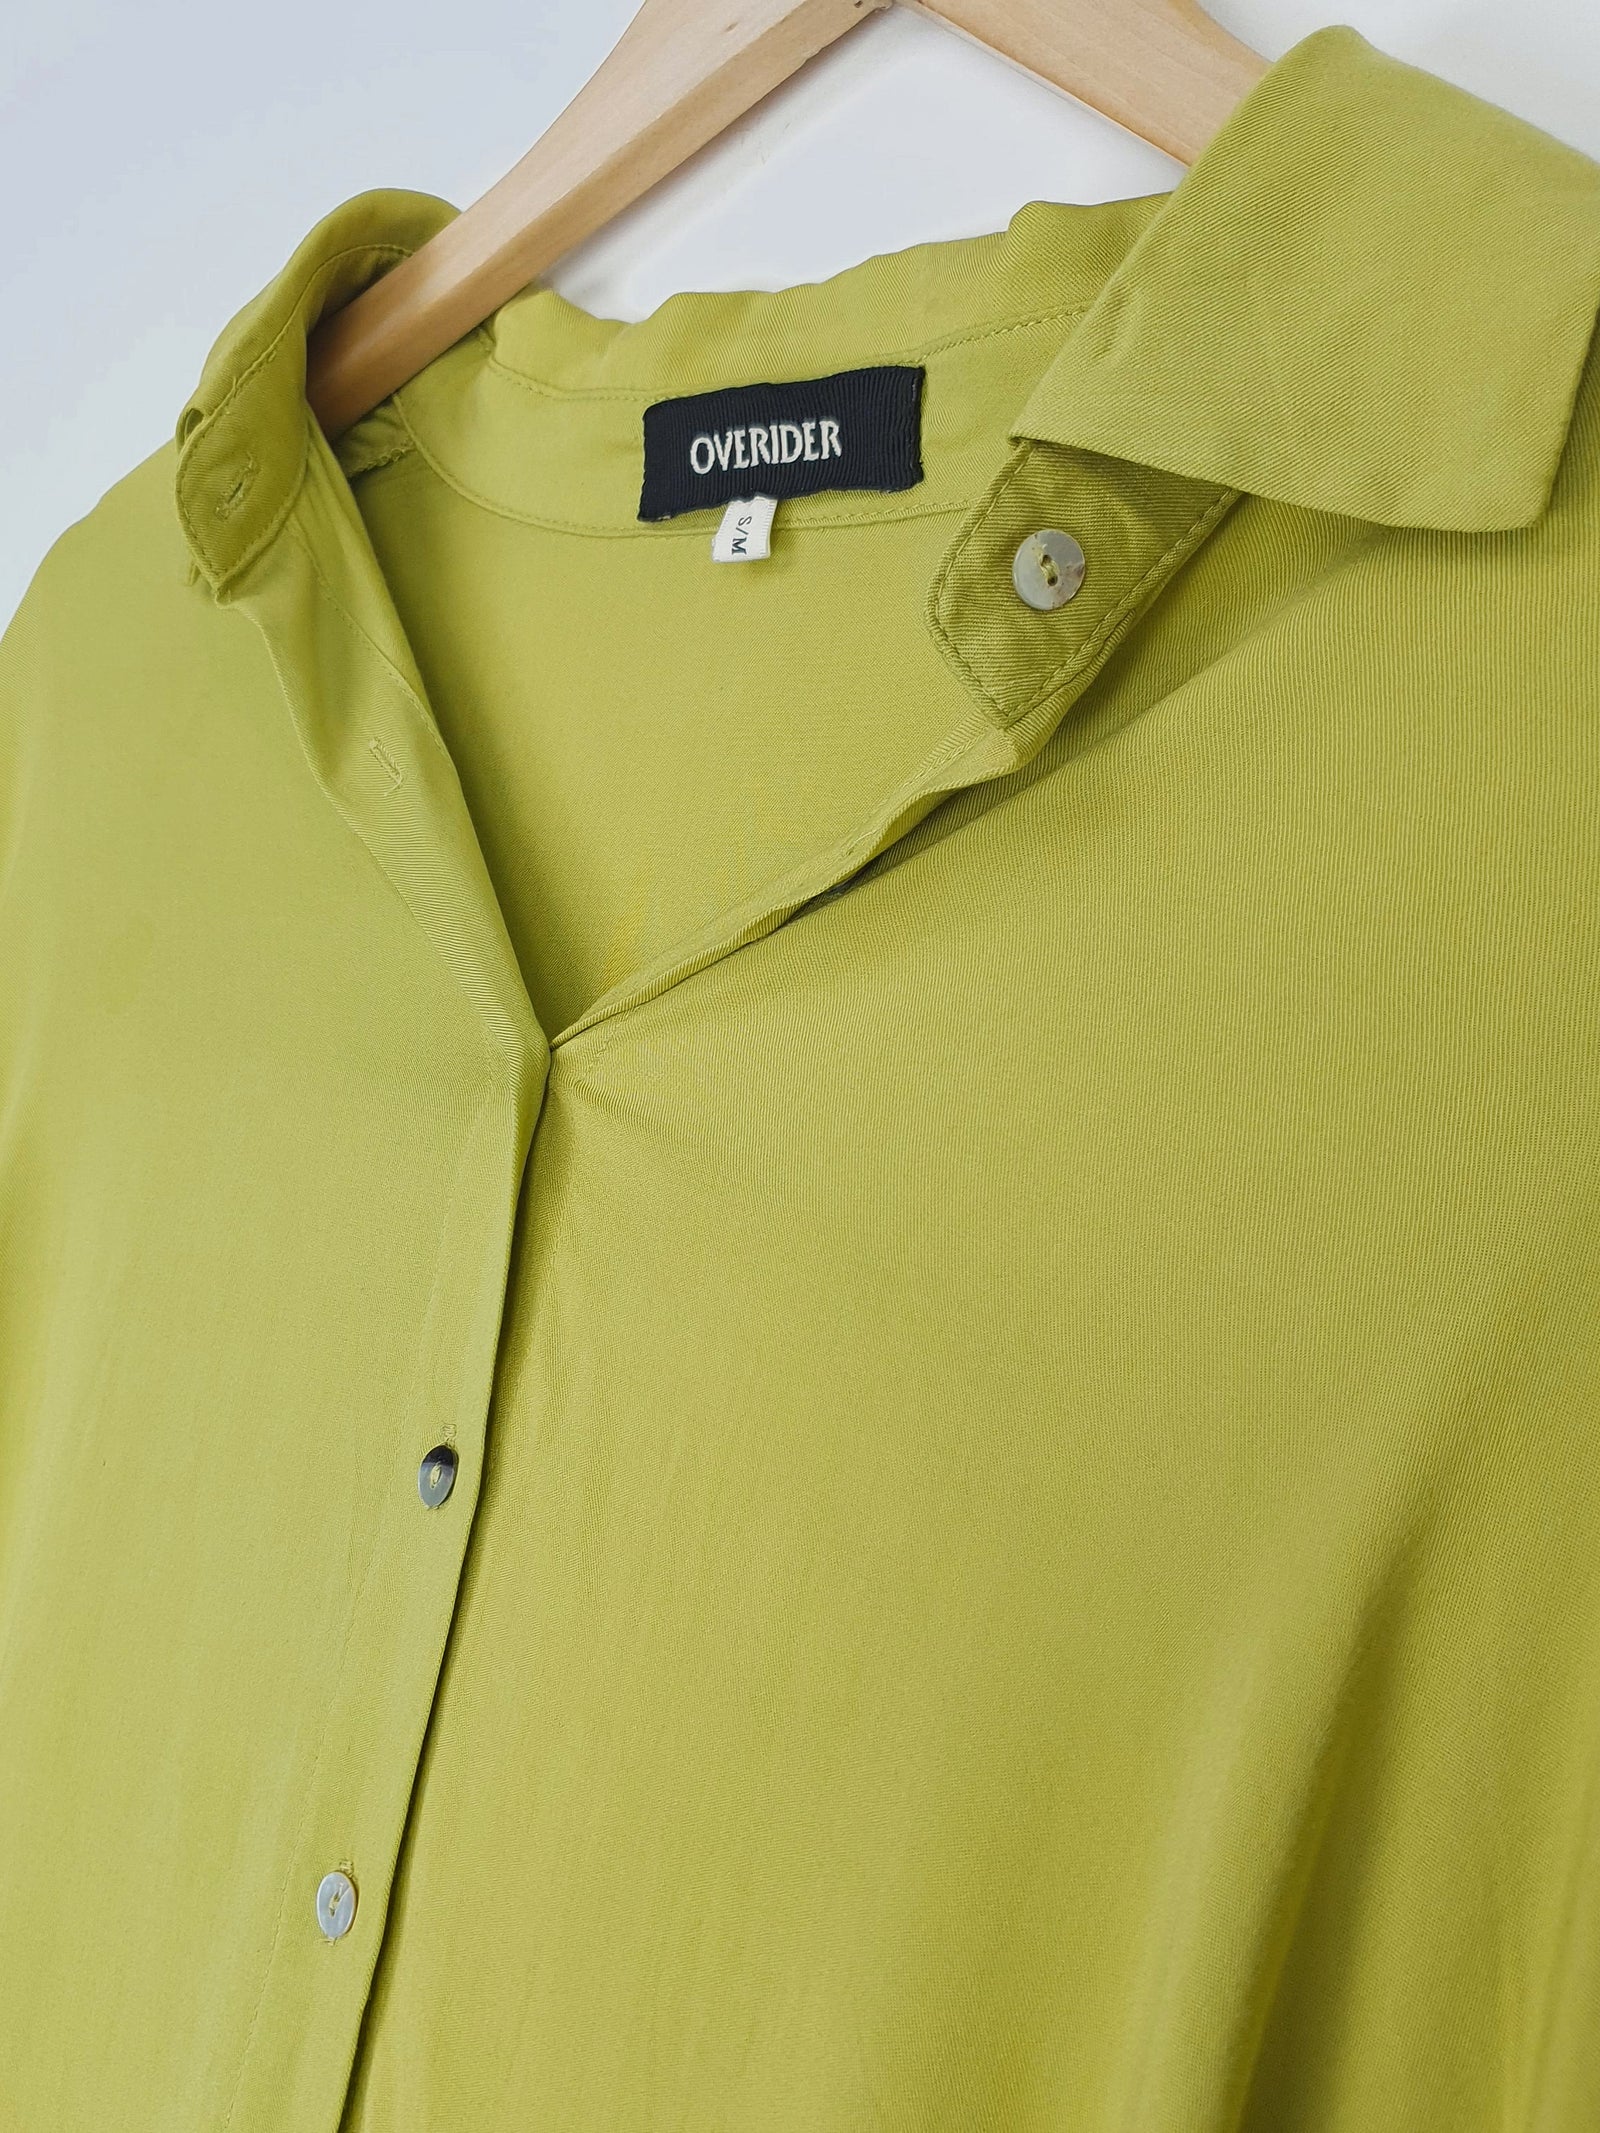 GANNA | Woman's Fluid Shirt | Green